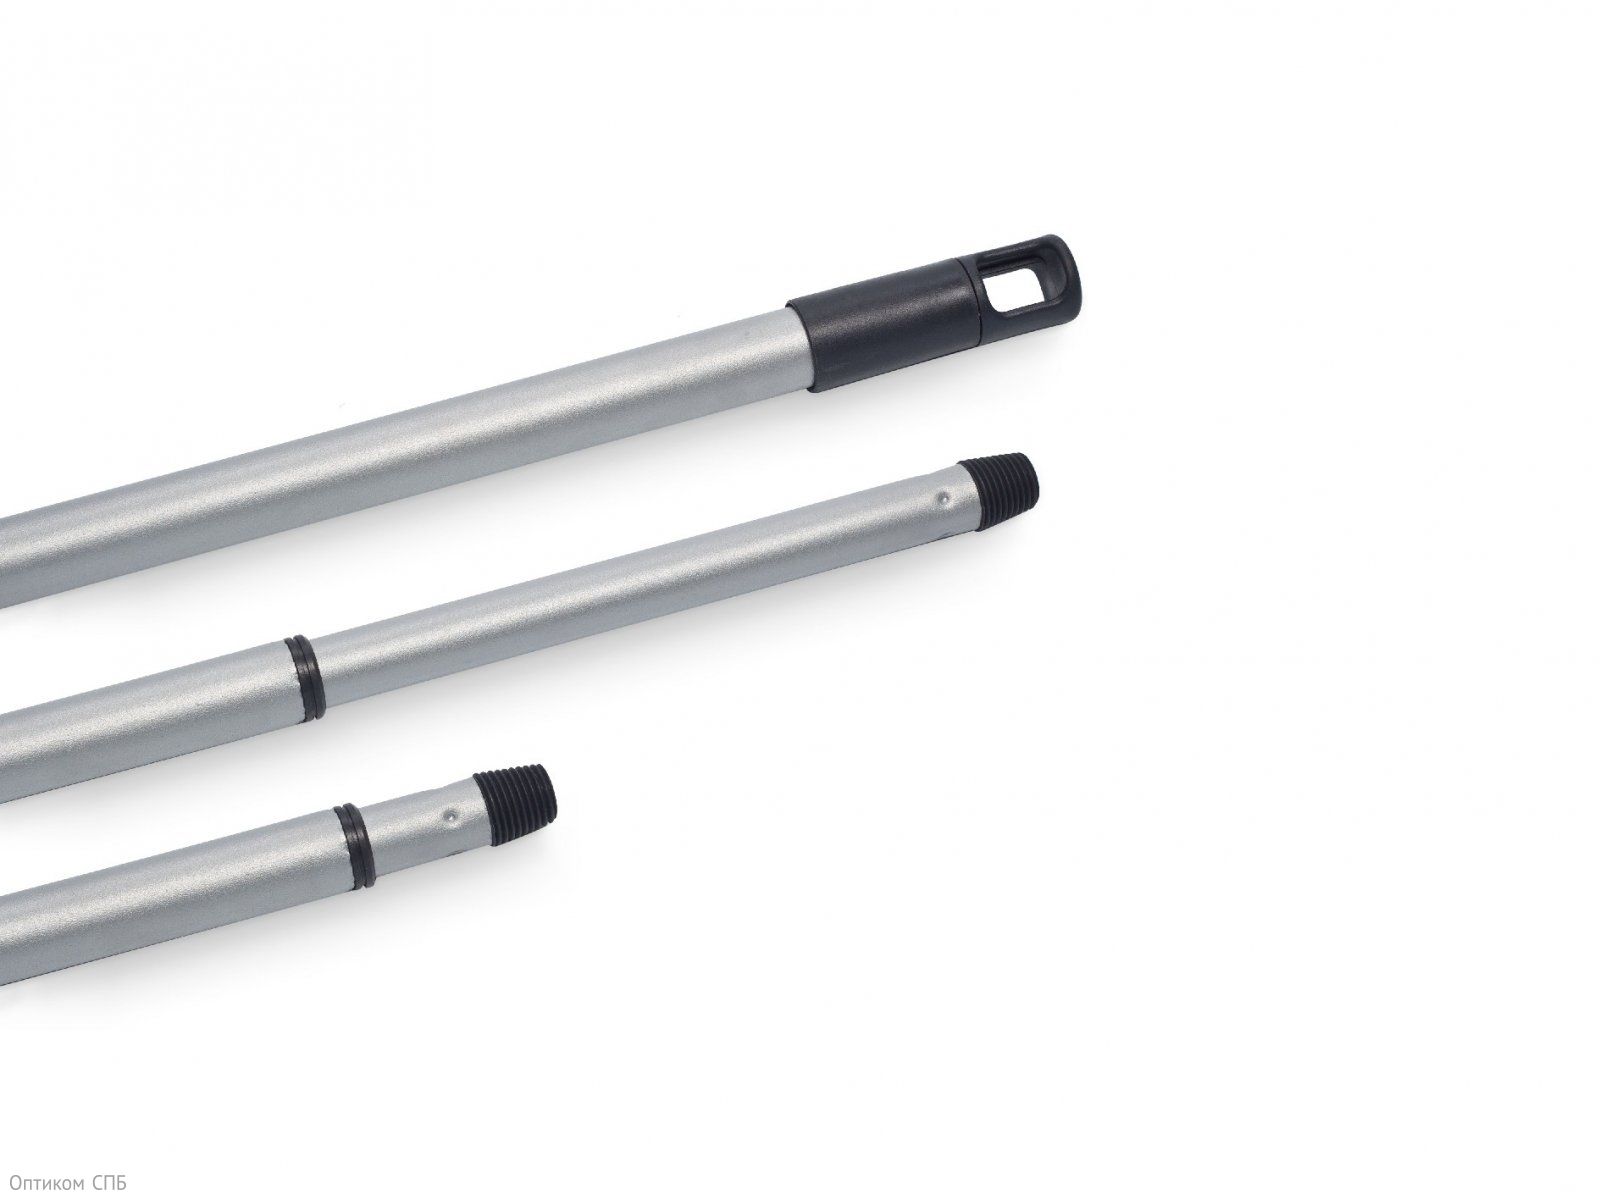 Телескопическая ручка Vileda УльтраСпид Мини (Виледа) легкая телескопическая алюминиевая ручка позволяет подобрать наиболее удобную длину для осуществления уборки. Дизайн рукоятки обеспечивает надежный захват. Длина 84-144 см.